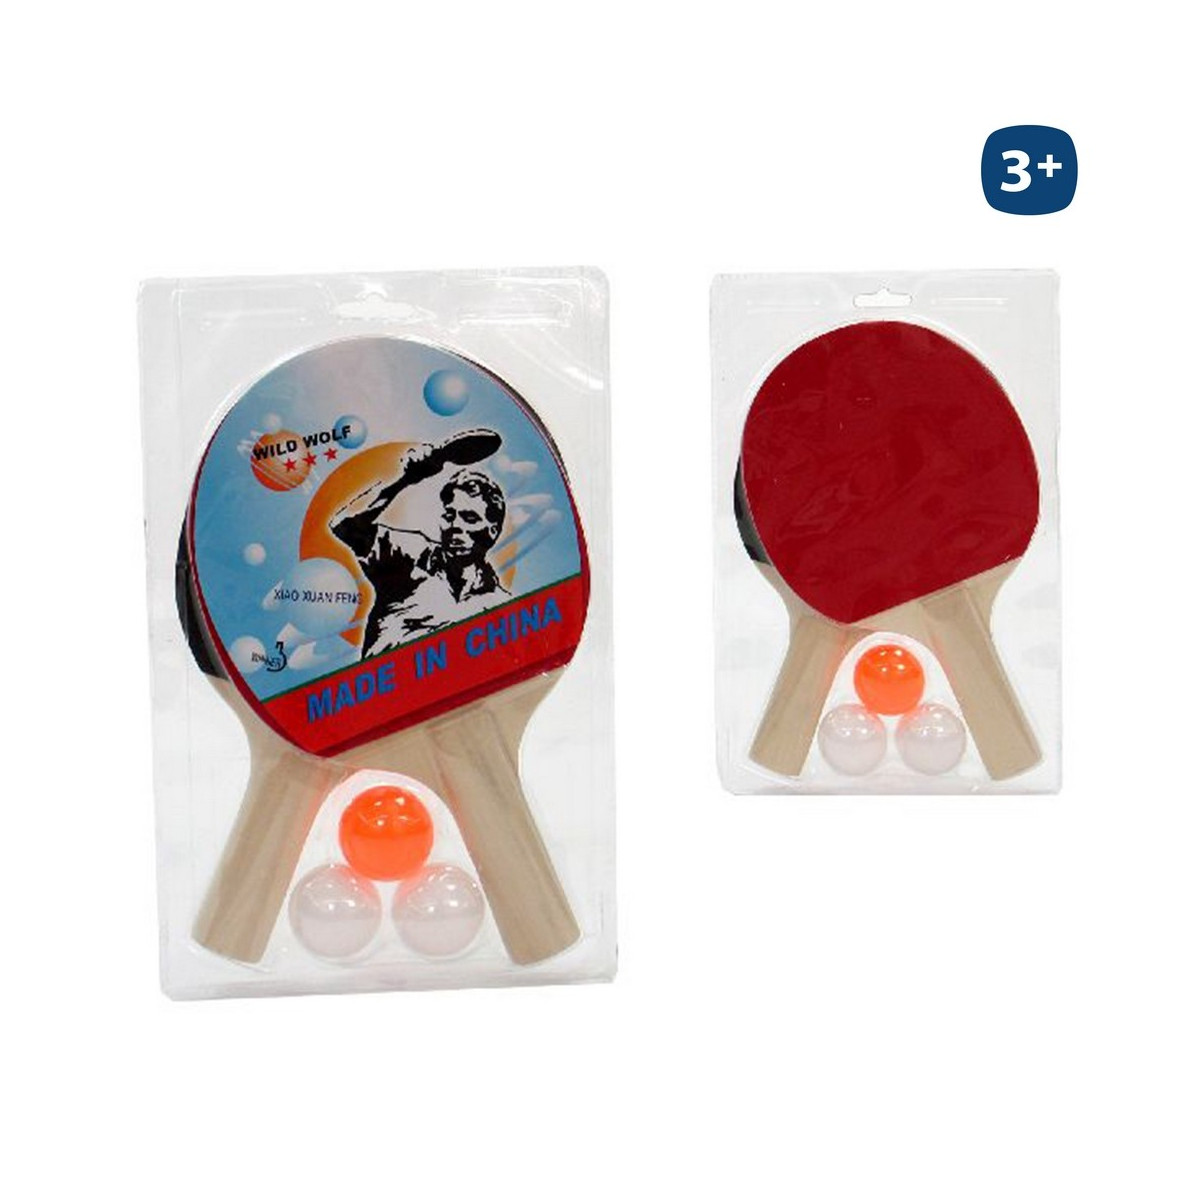 Set 2 racchette + 3 palline. ping pong